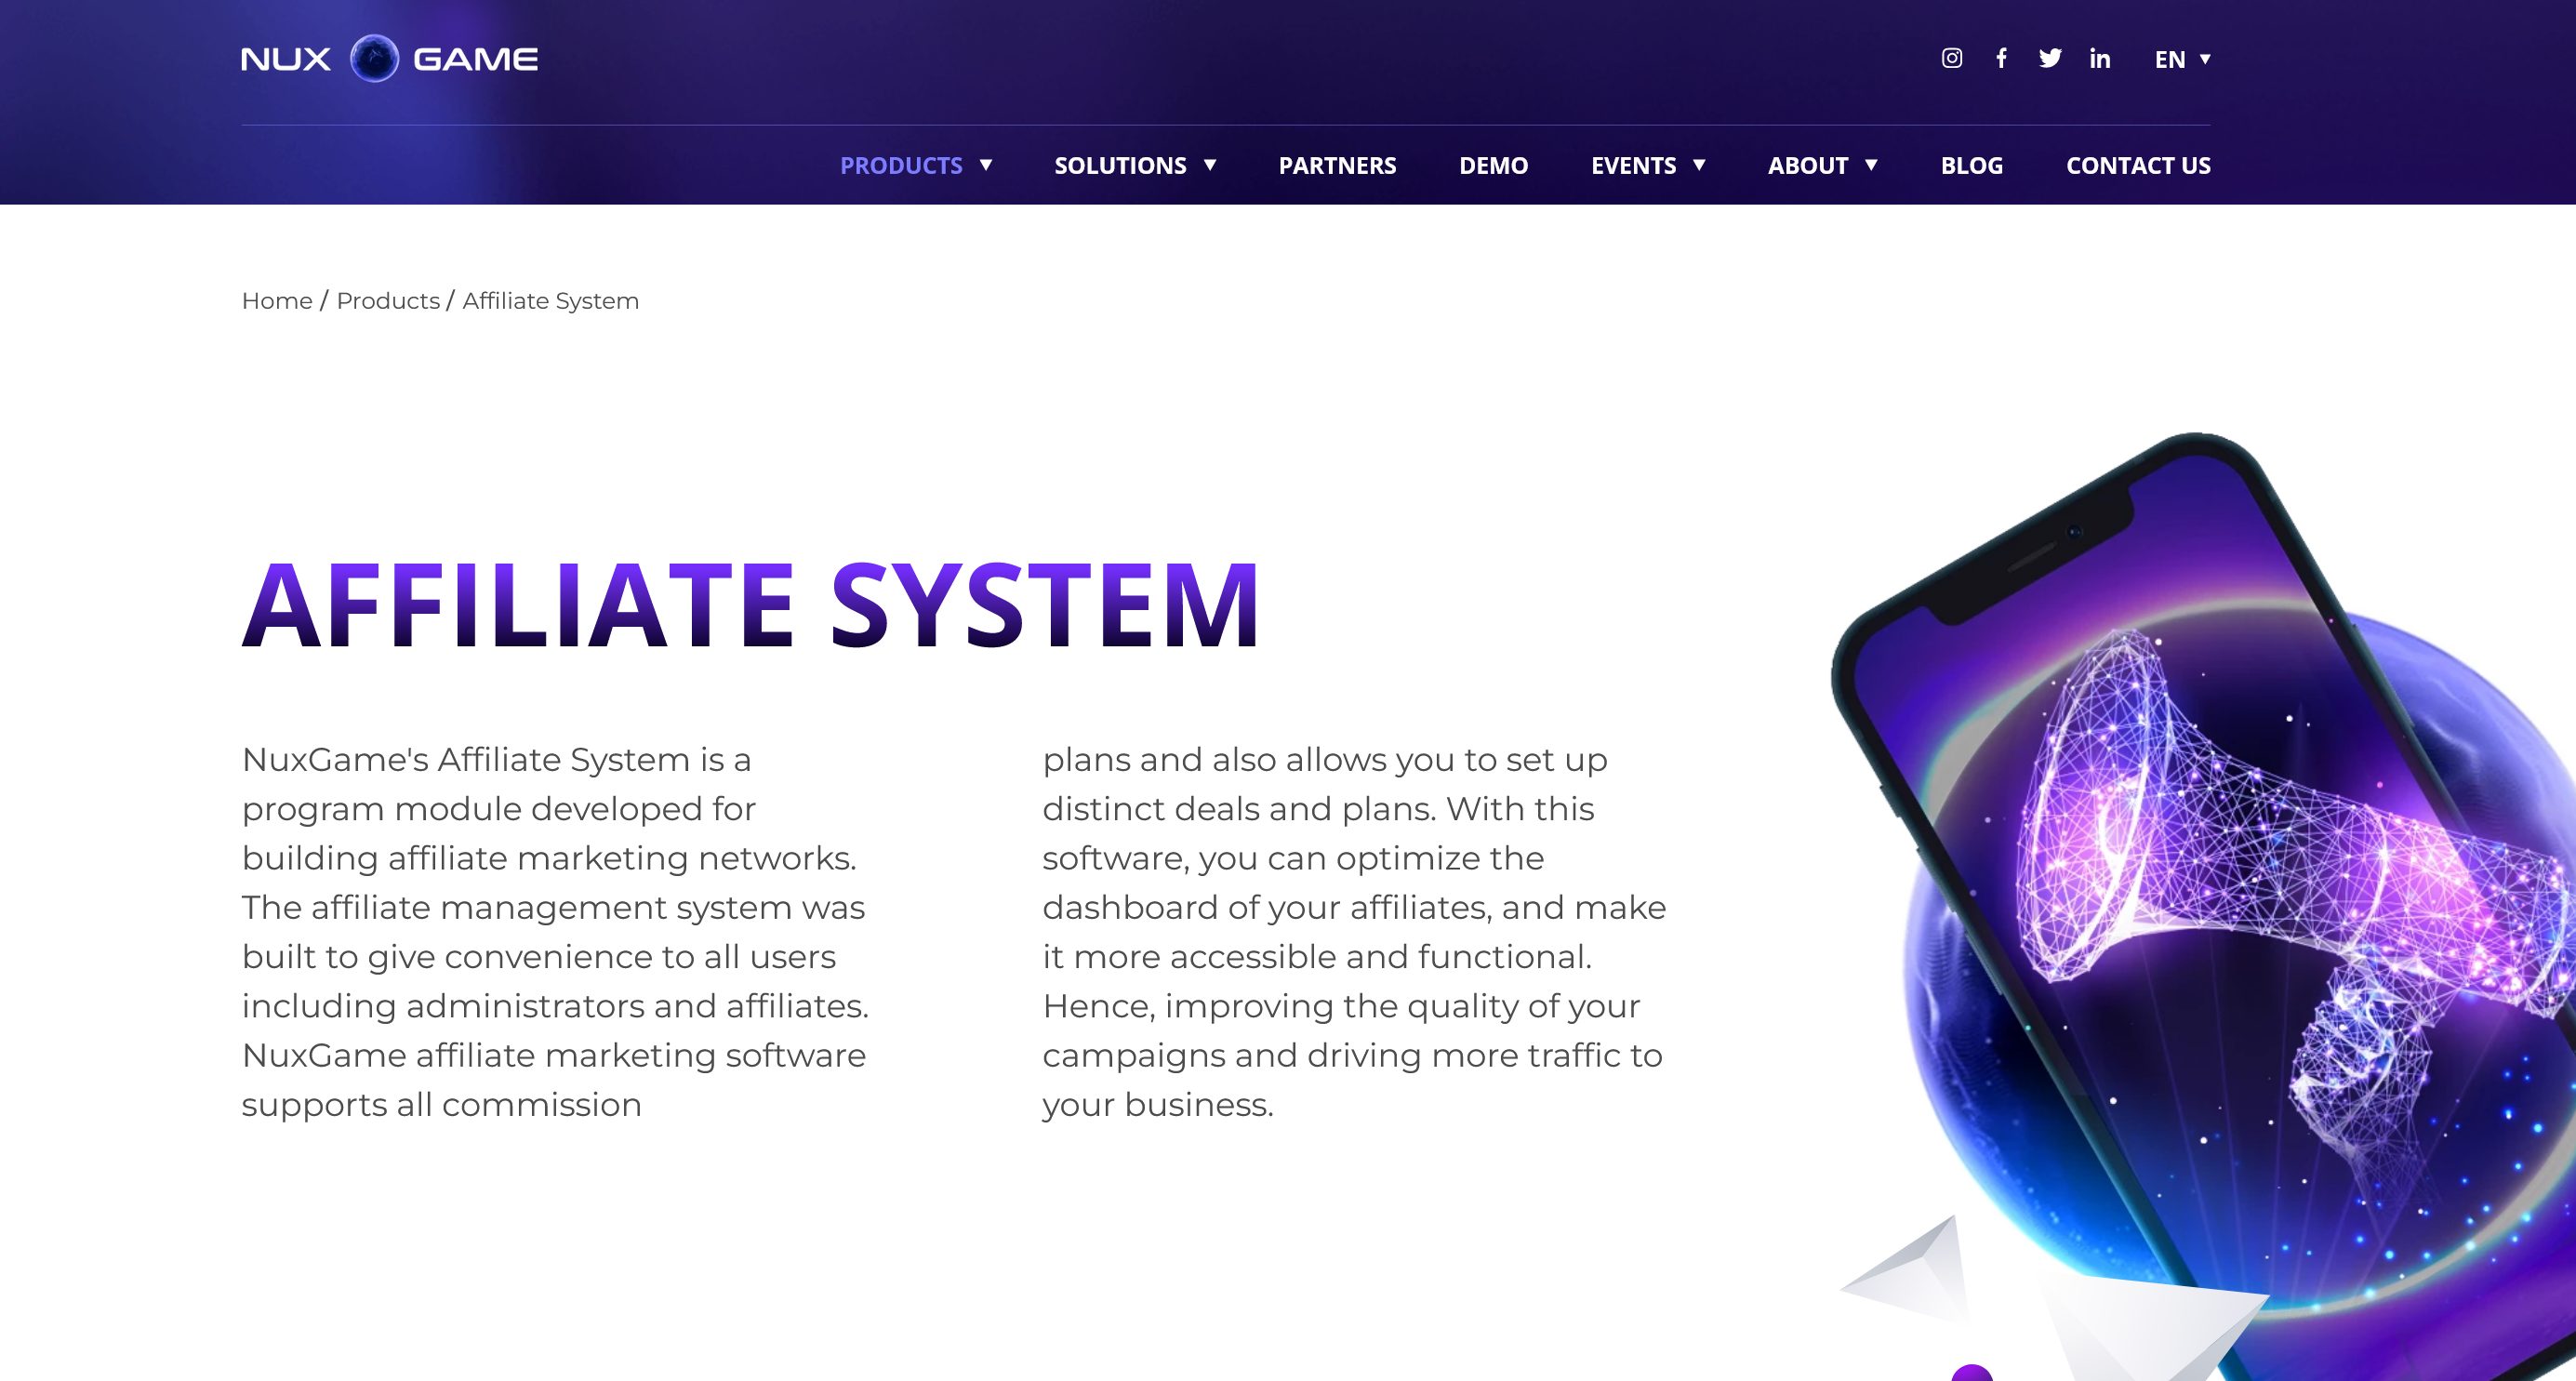 NuxGame Affiliate System to moduł programu przeznaczony do tworzenia sieci marketingu afiliacyjnego.